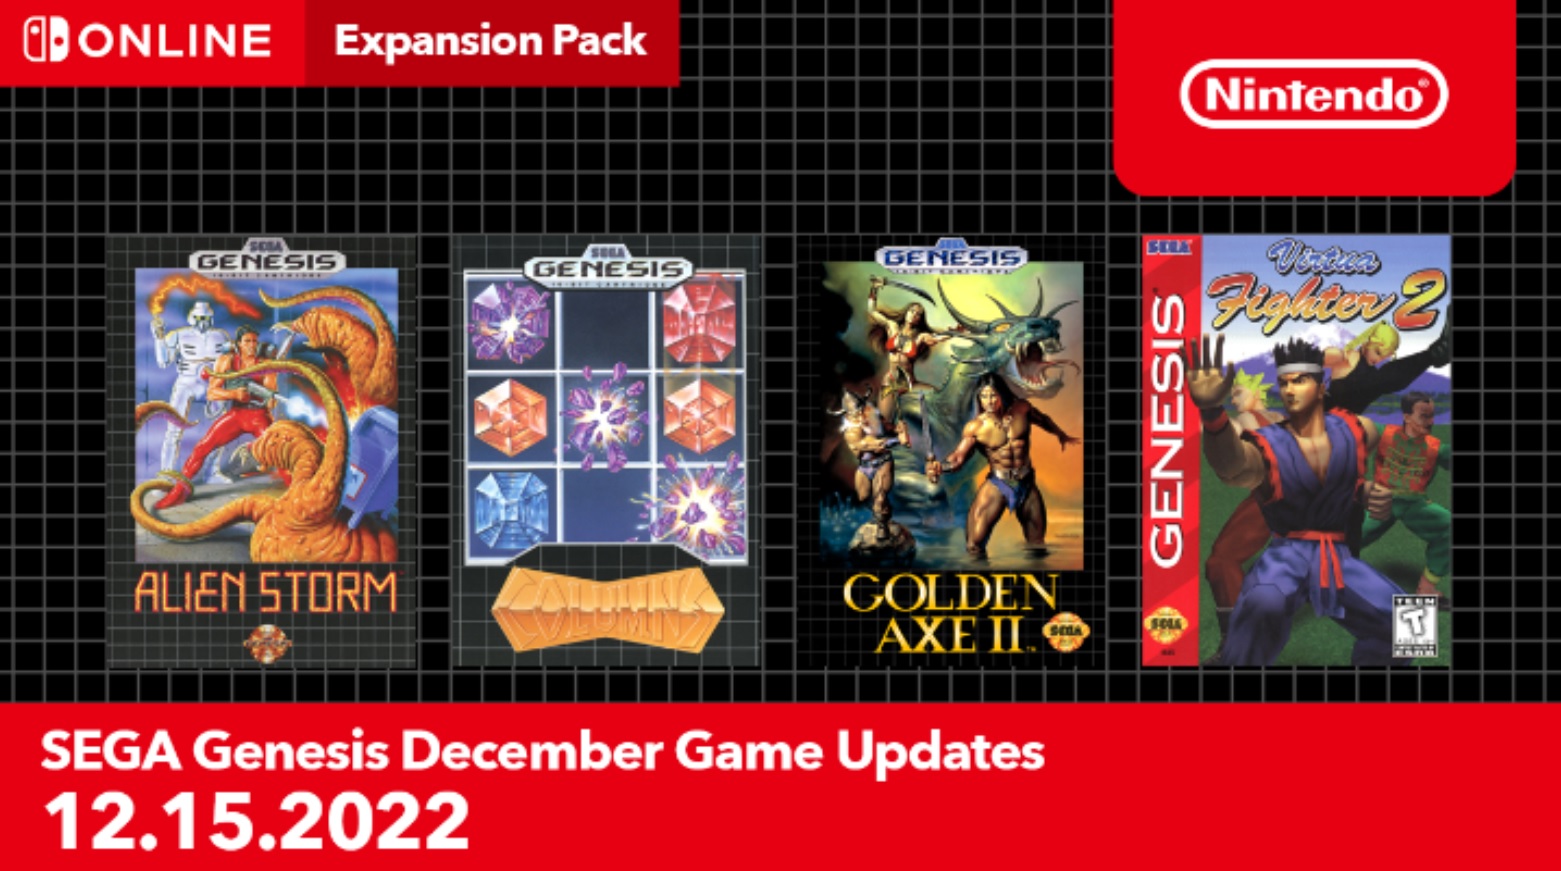 Nintendo Switch Online adds Golden Axe II, Virtua Fighter 2, Alien 